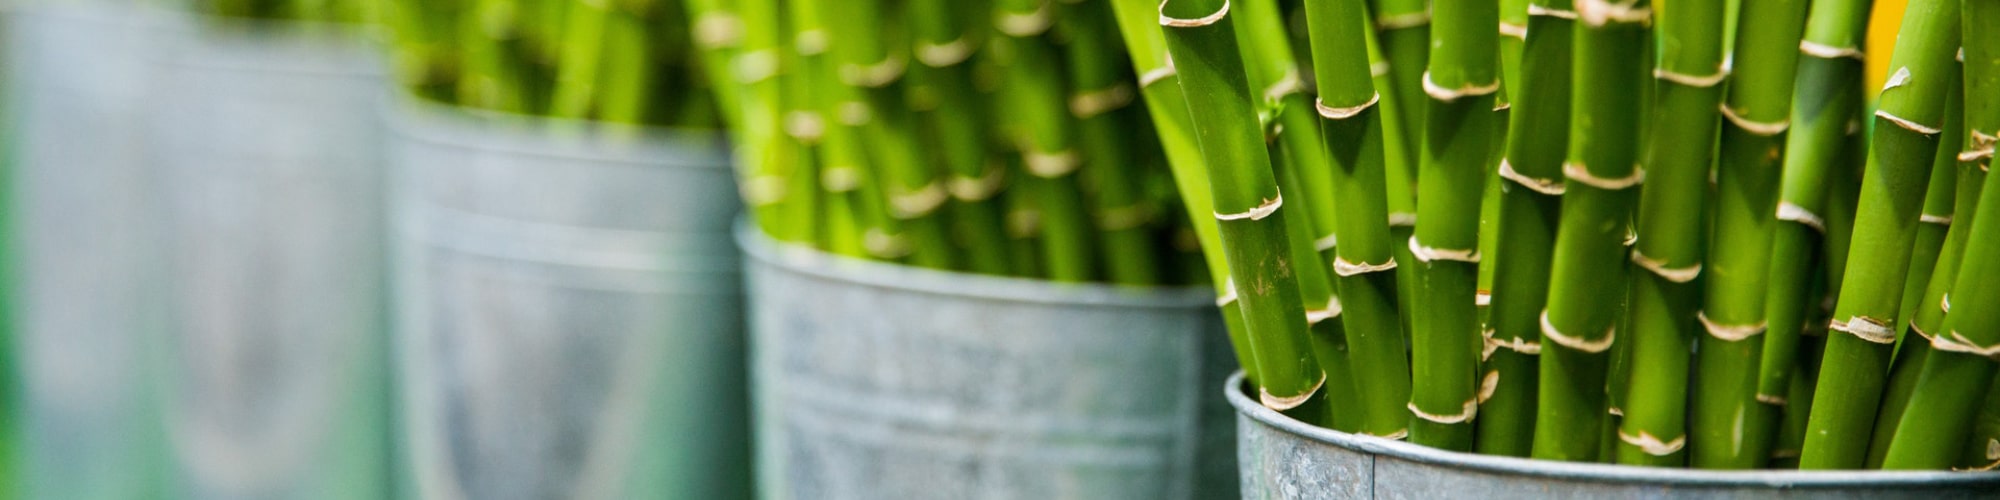 Bambus planter i potter